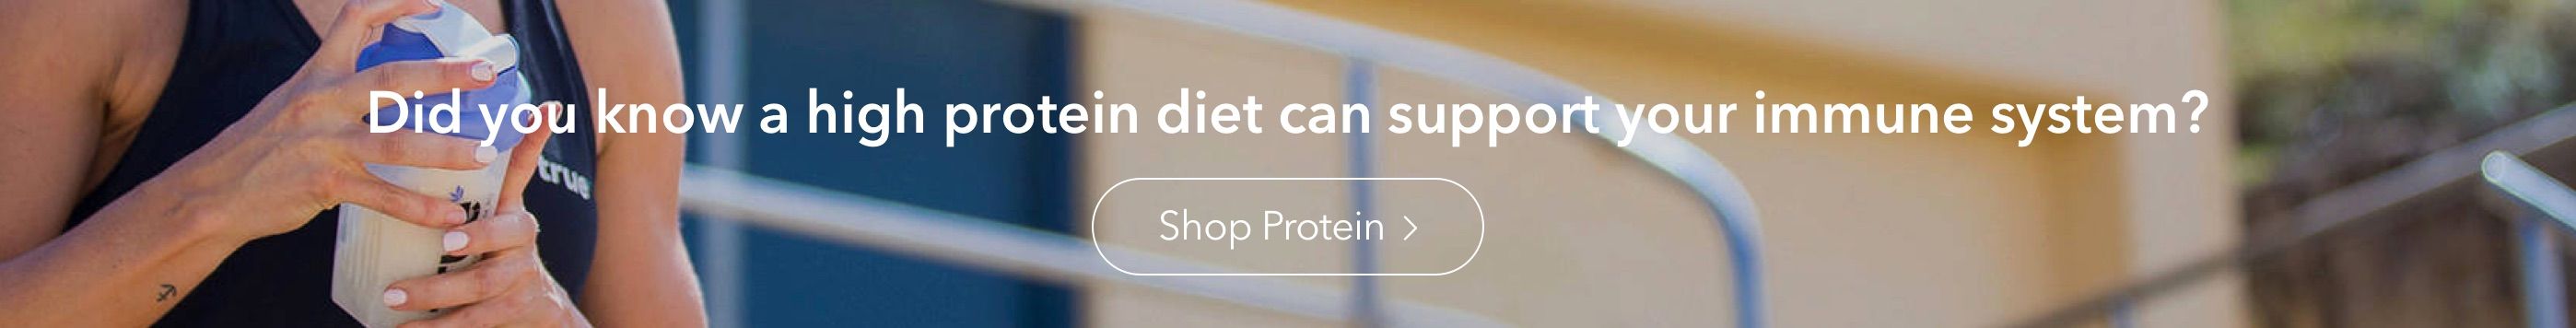 High Protein Diet Banner